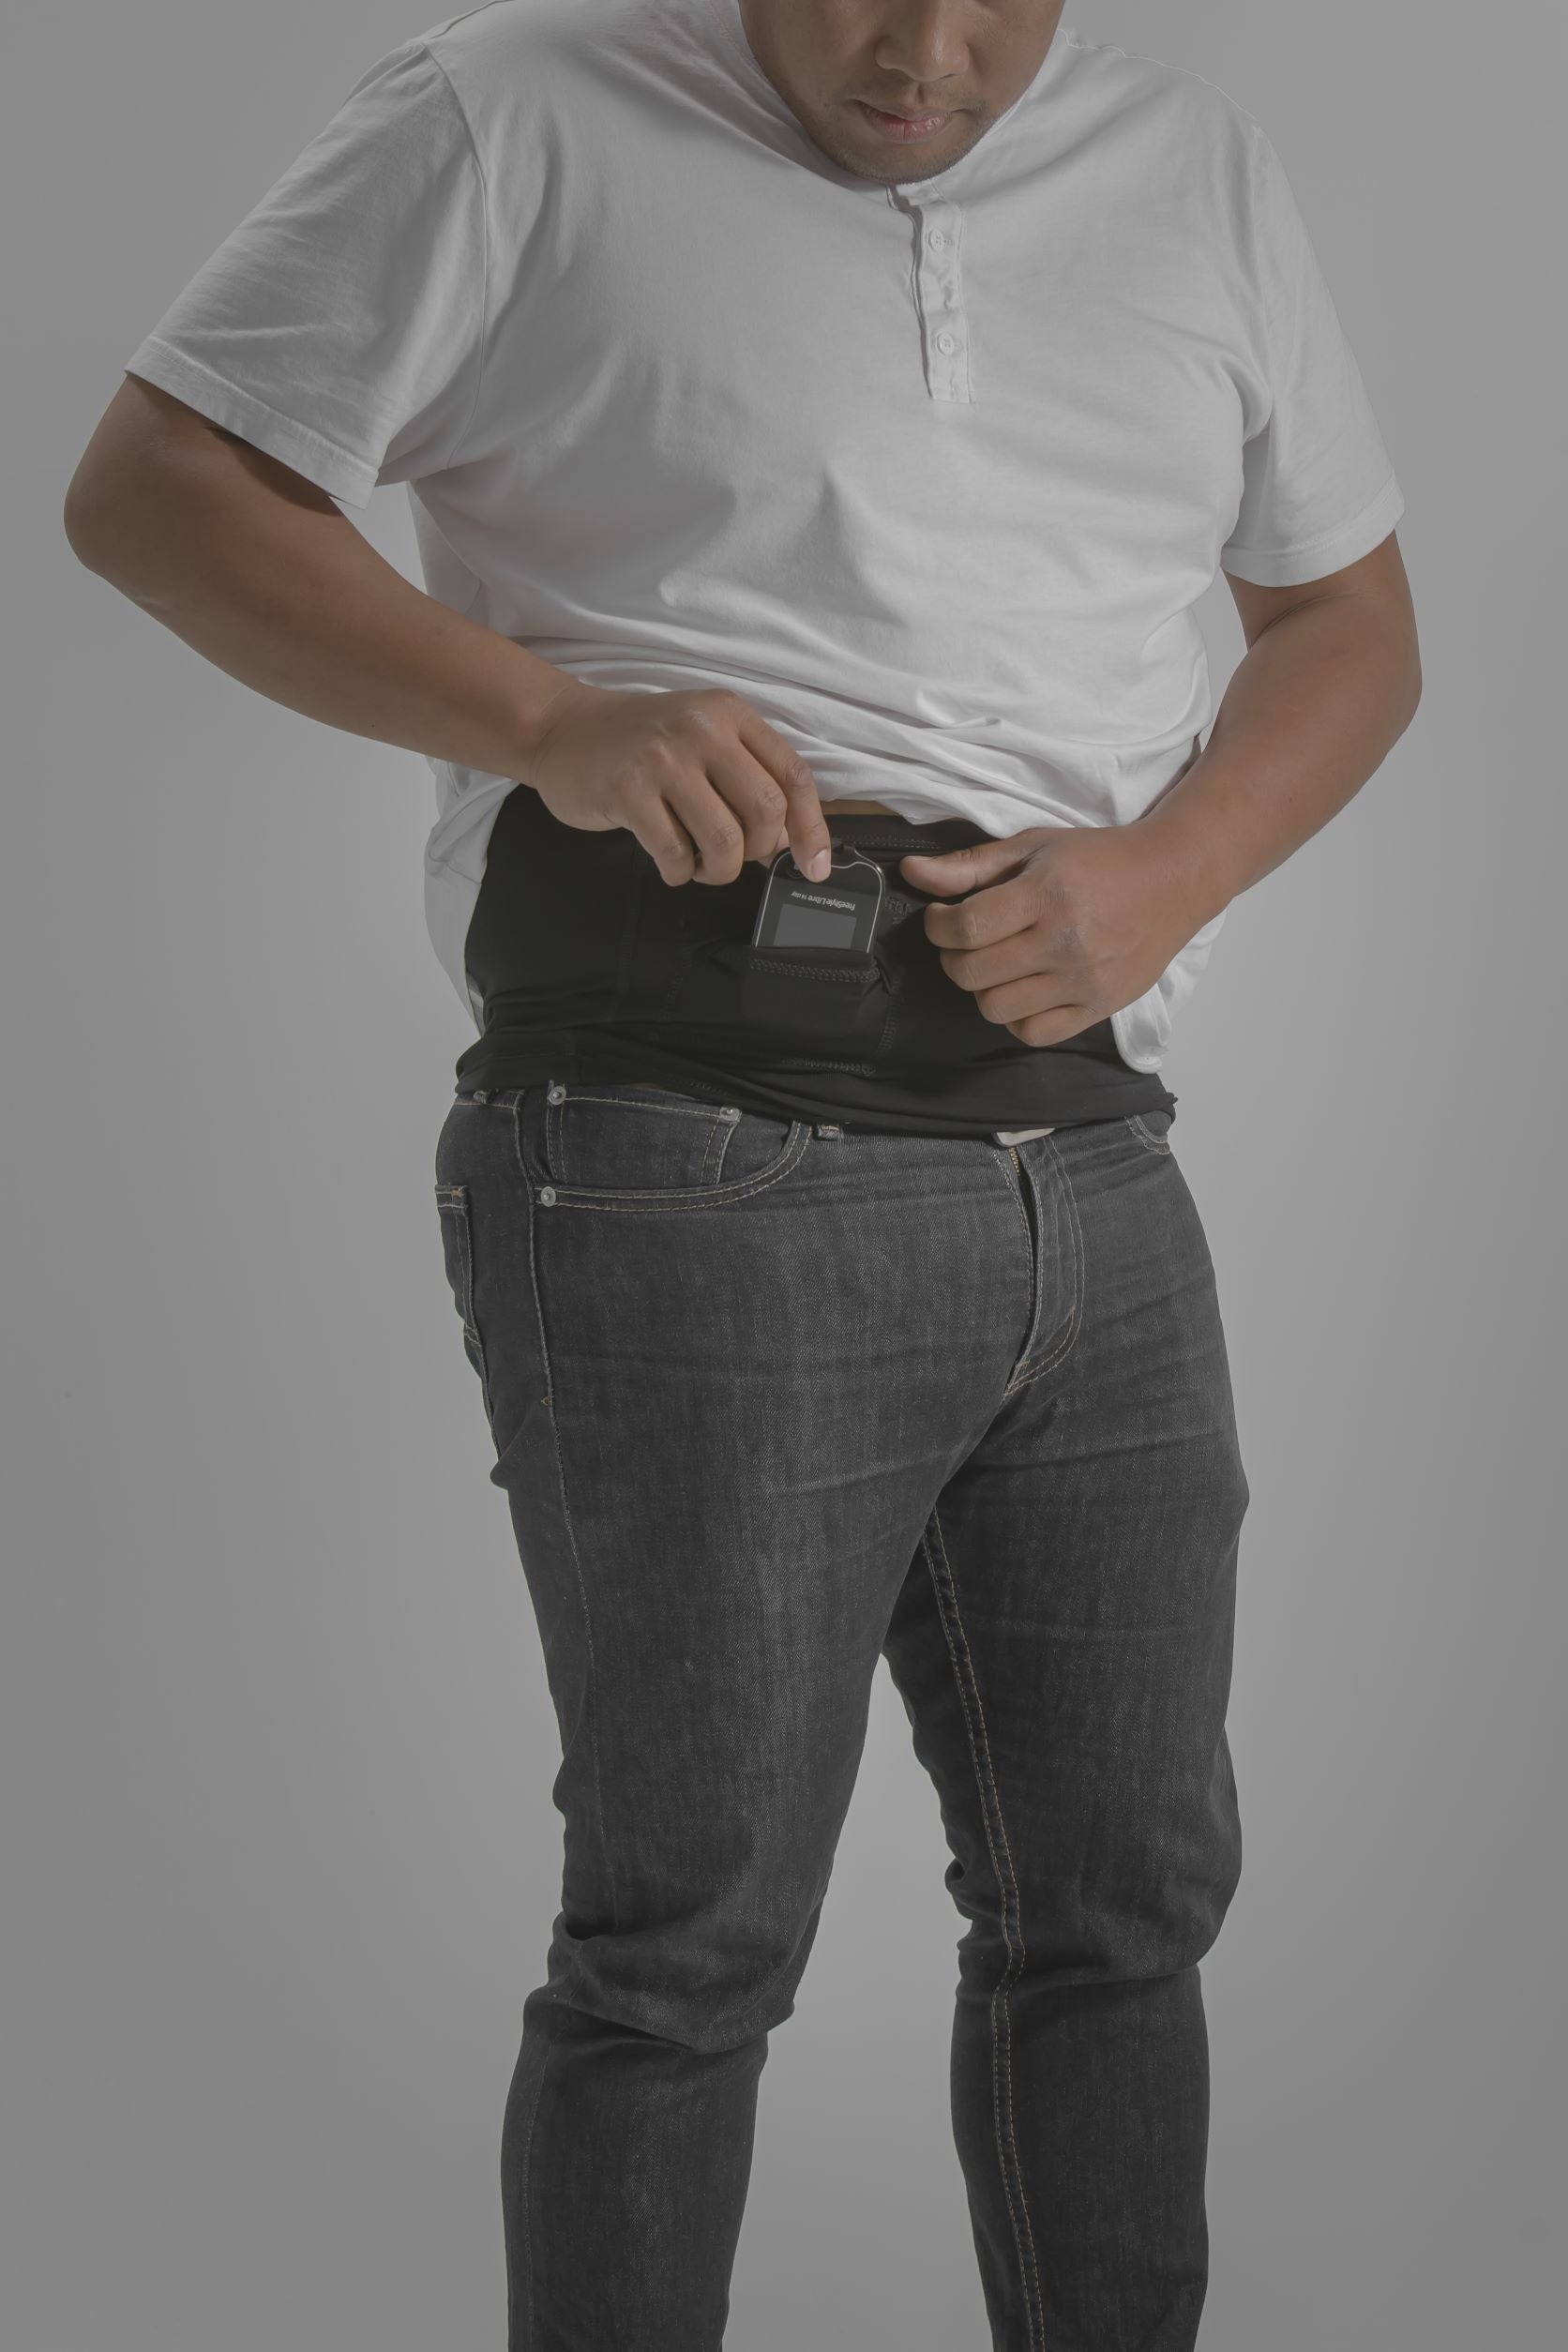 Women's Activewear Boyshort Underwear with Insulin Pump Pockets